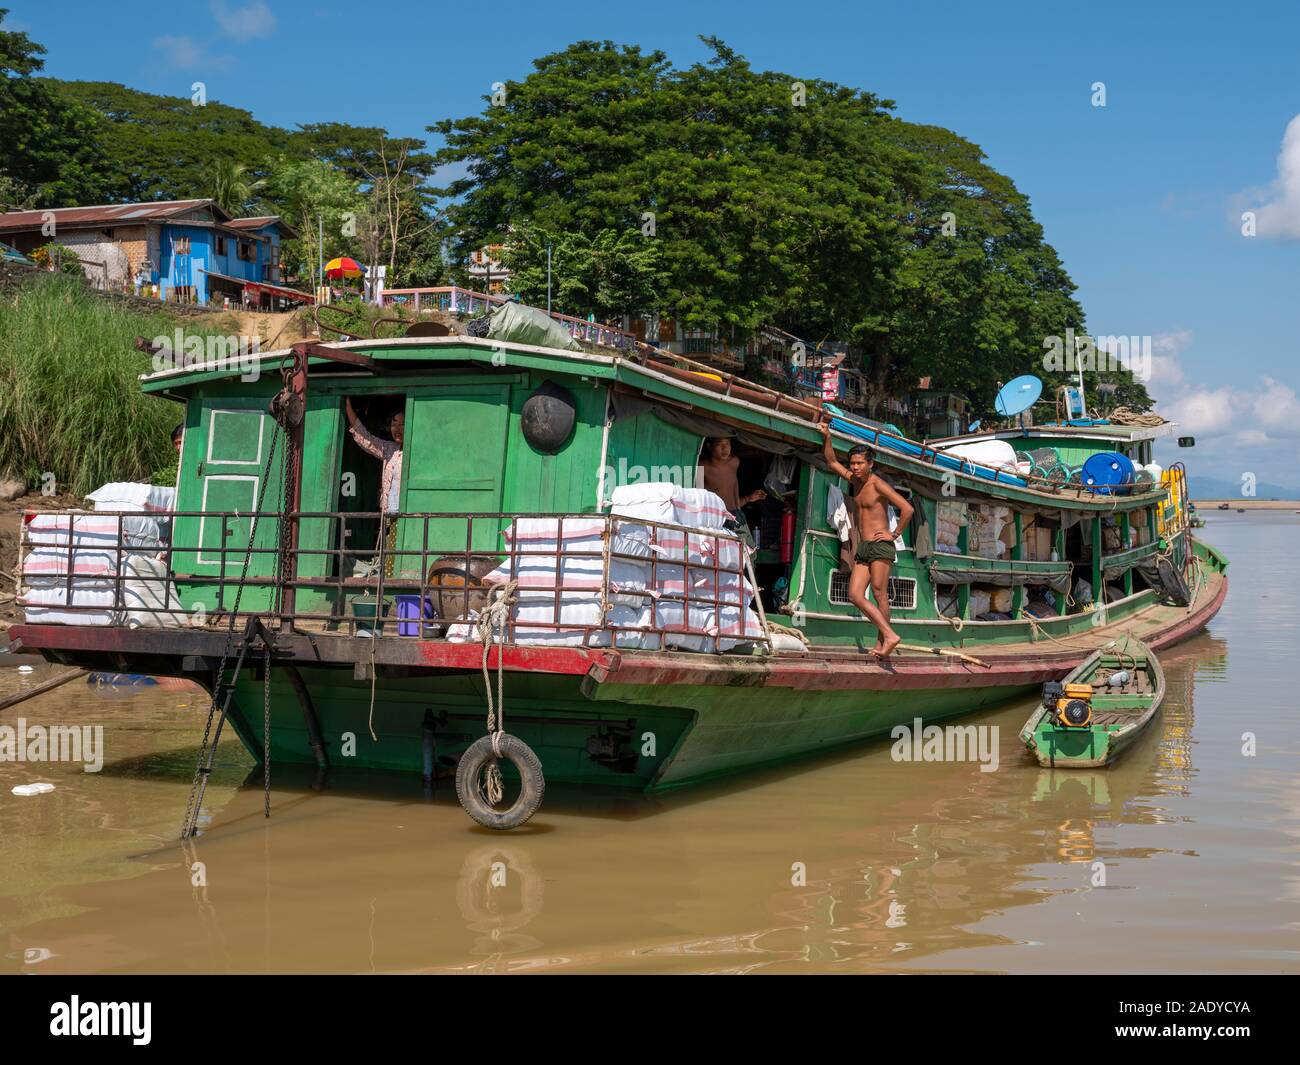 Un fiume birmano barca sul fiume Chindwin serve come un mercato galleggiante per le merci in vendita come le vele di imbarcazioni in su e in giù il fiume in Myanmar (Birmania) Foto Stock